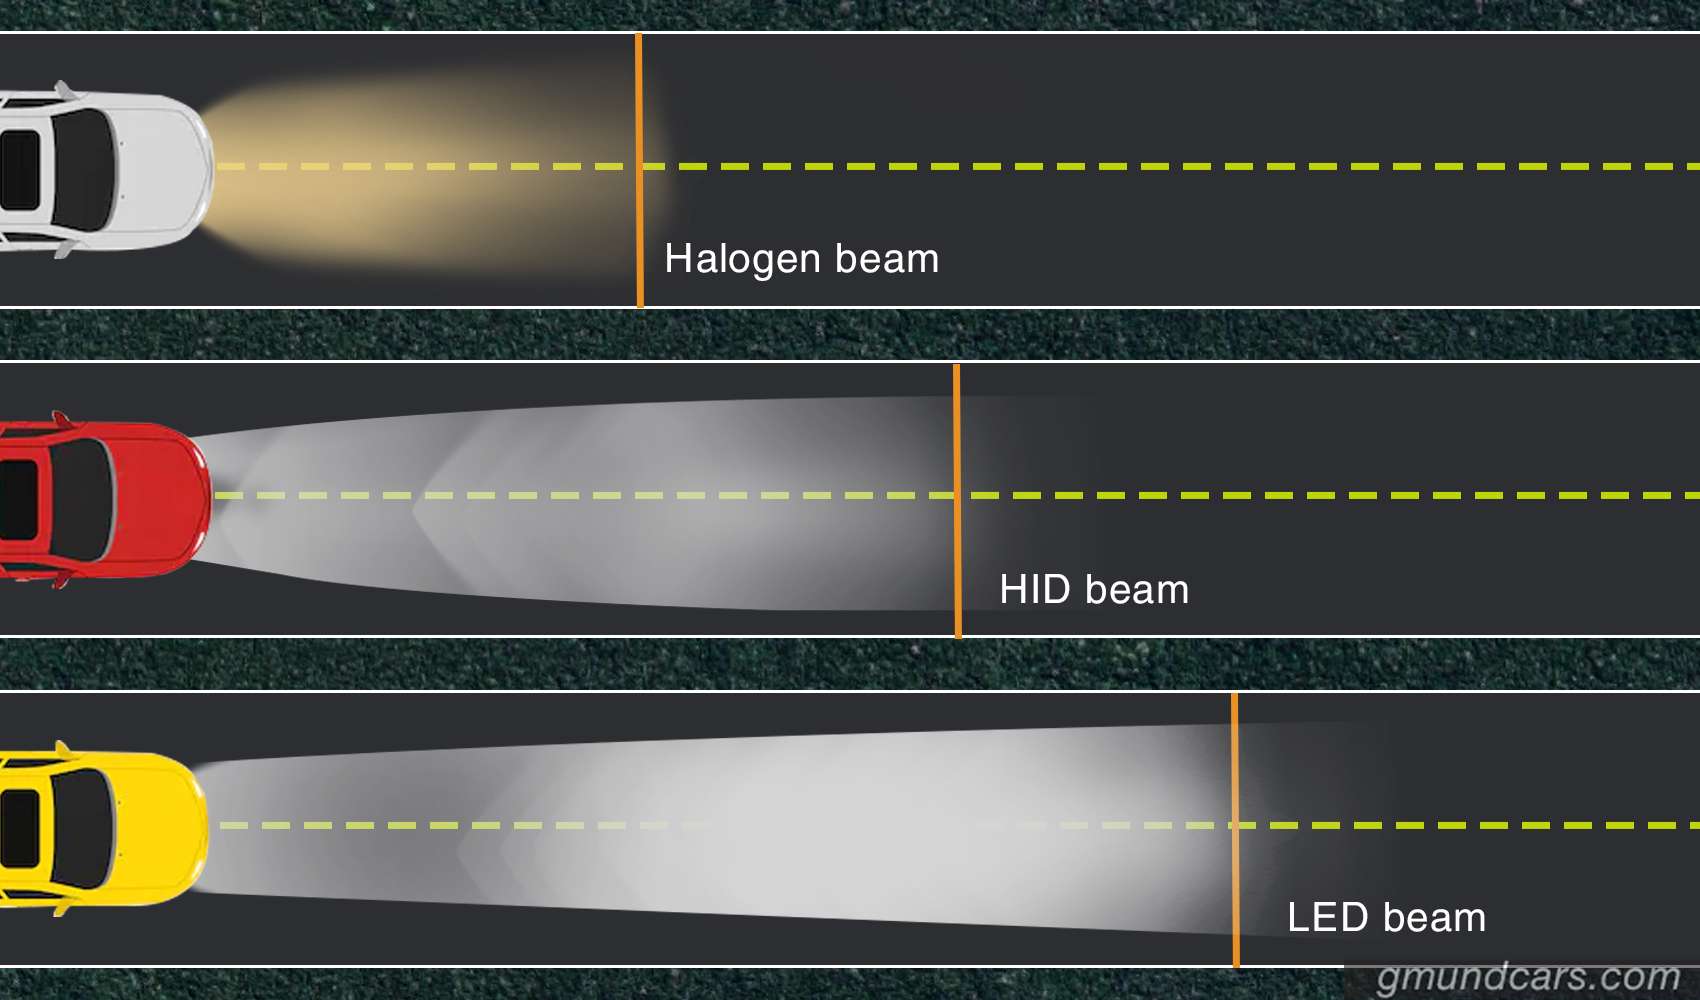 2008 prius headlight hid vs halogen